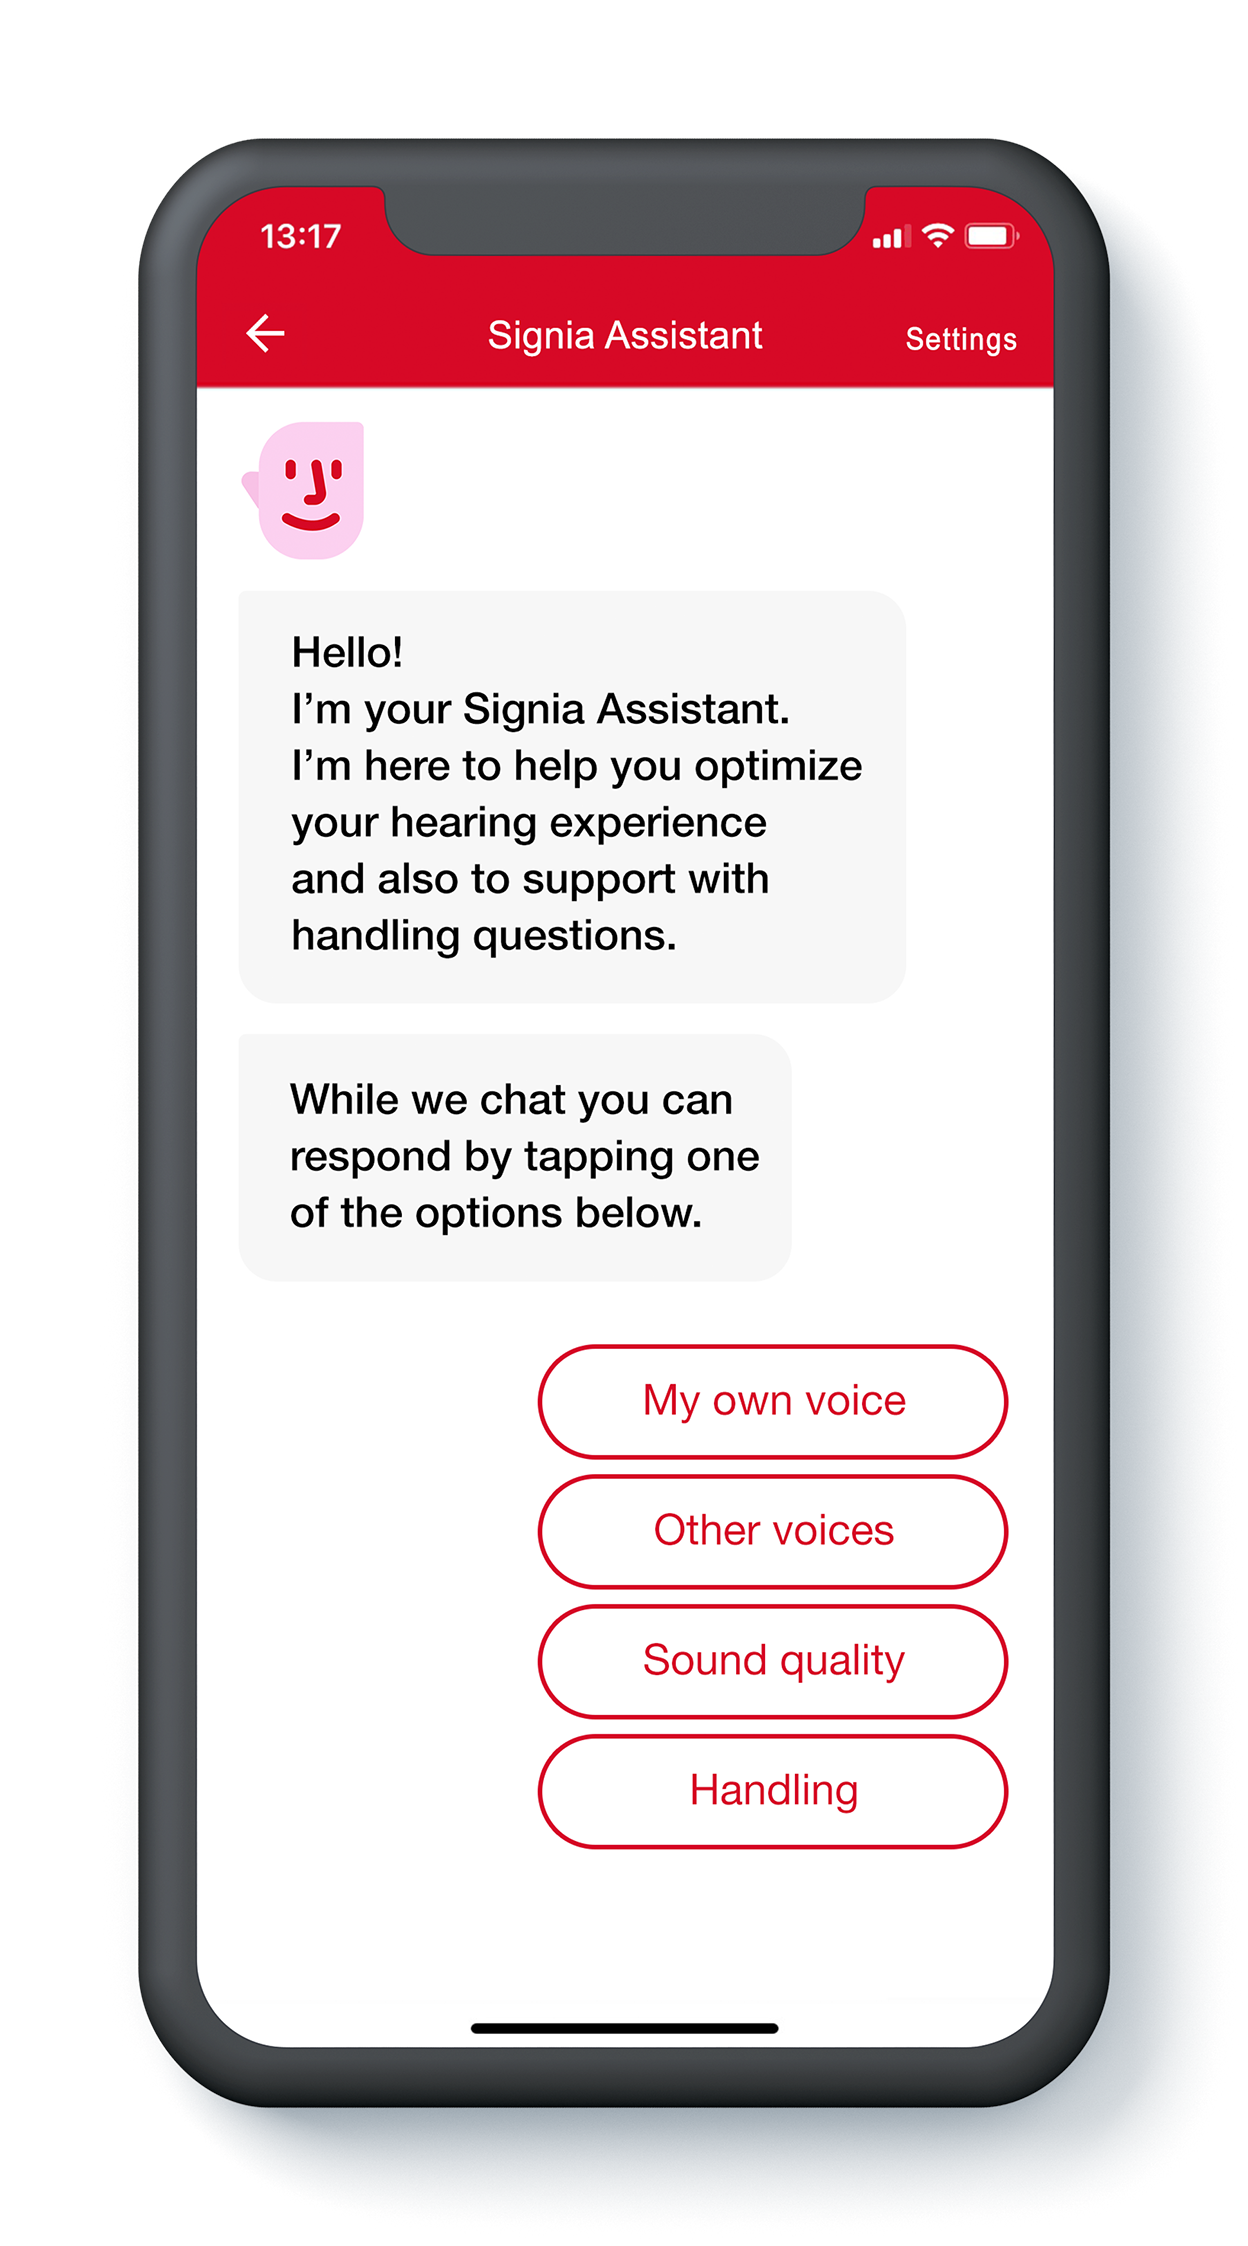 Der Signia Assistant ist eine neue Funktion der Signia App, speziell für Xperience-Versorgungen. Er ist einsatzbereit, sobald er in Connexx aktiviert wird.